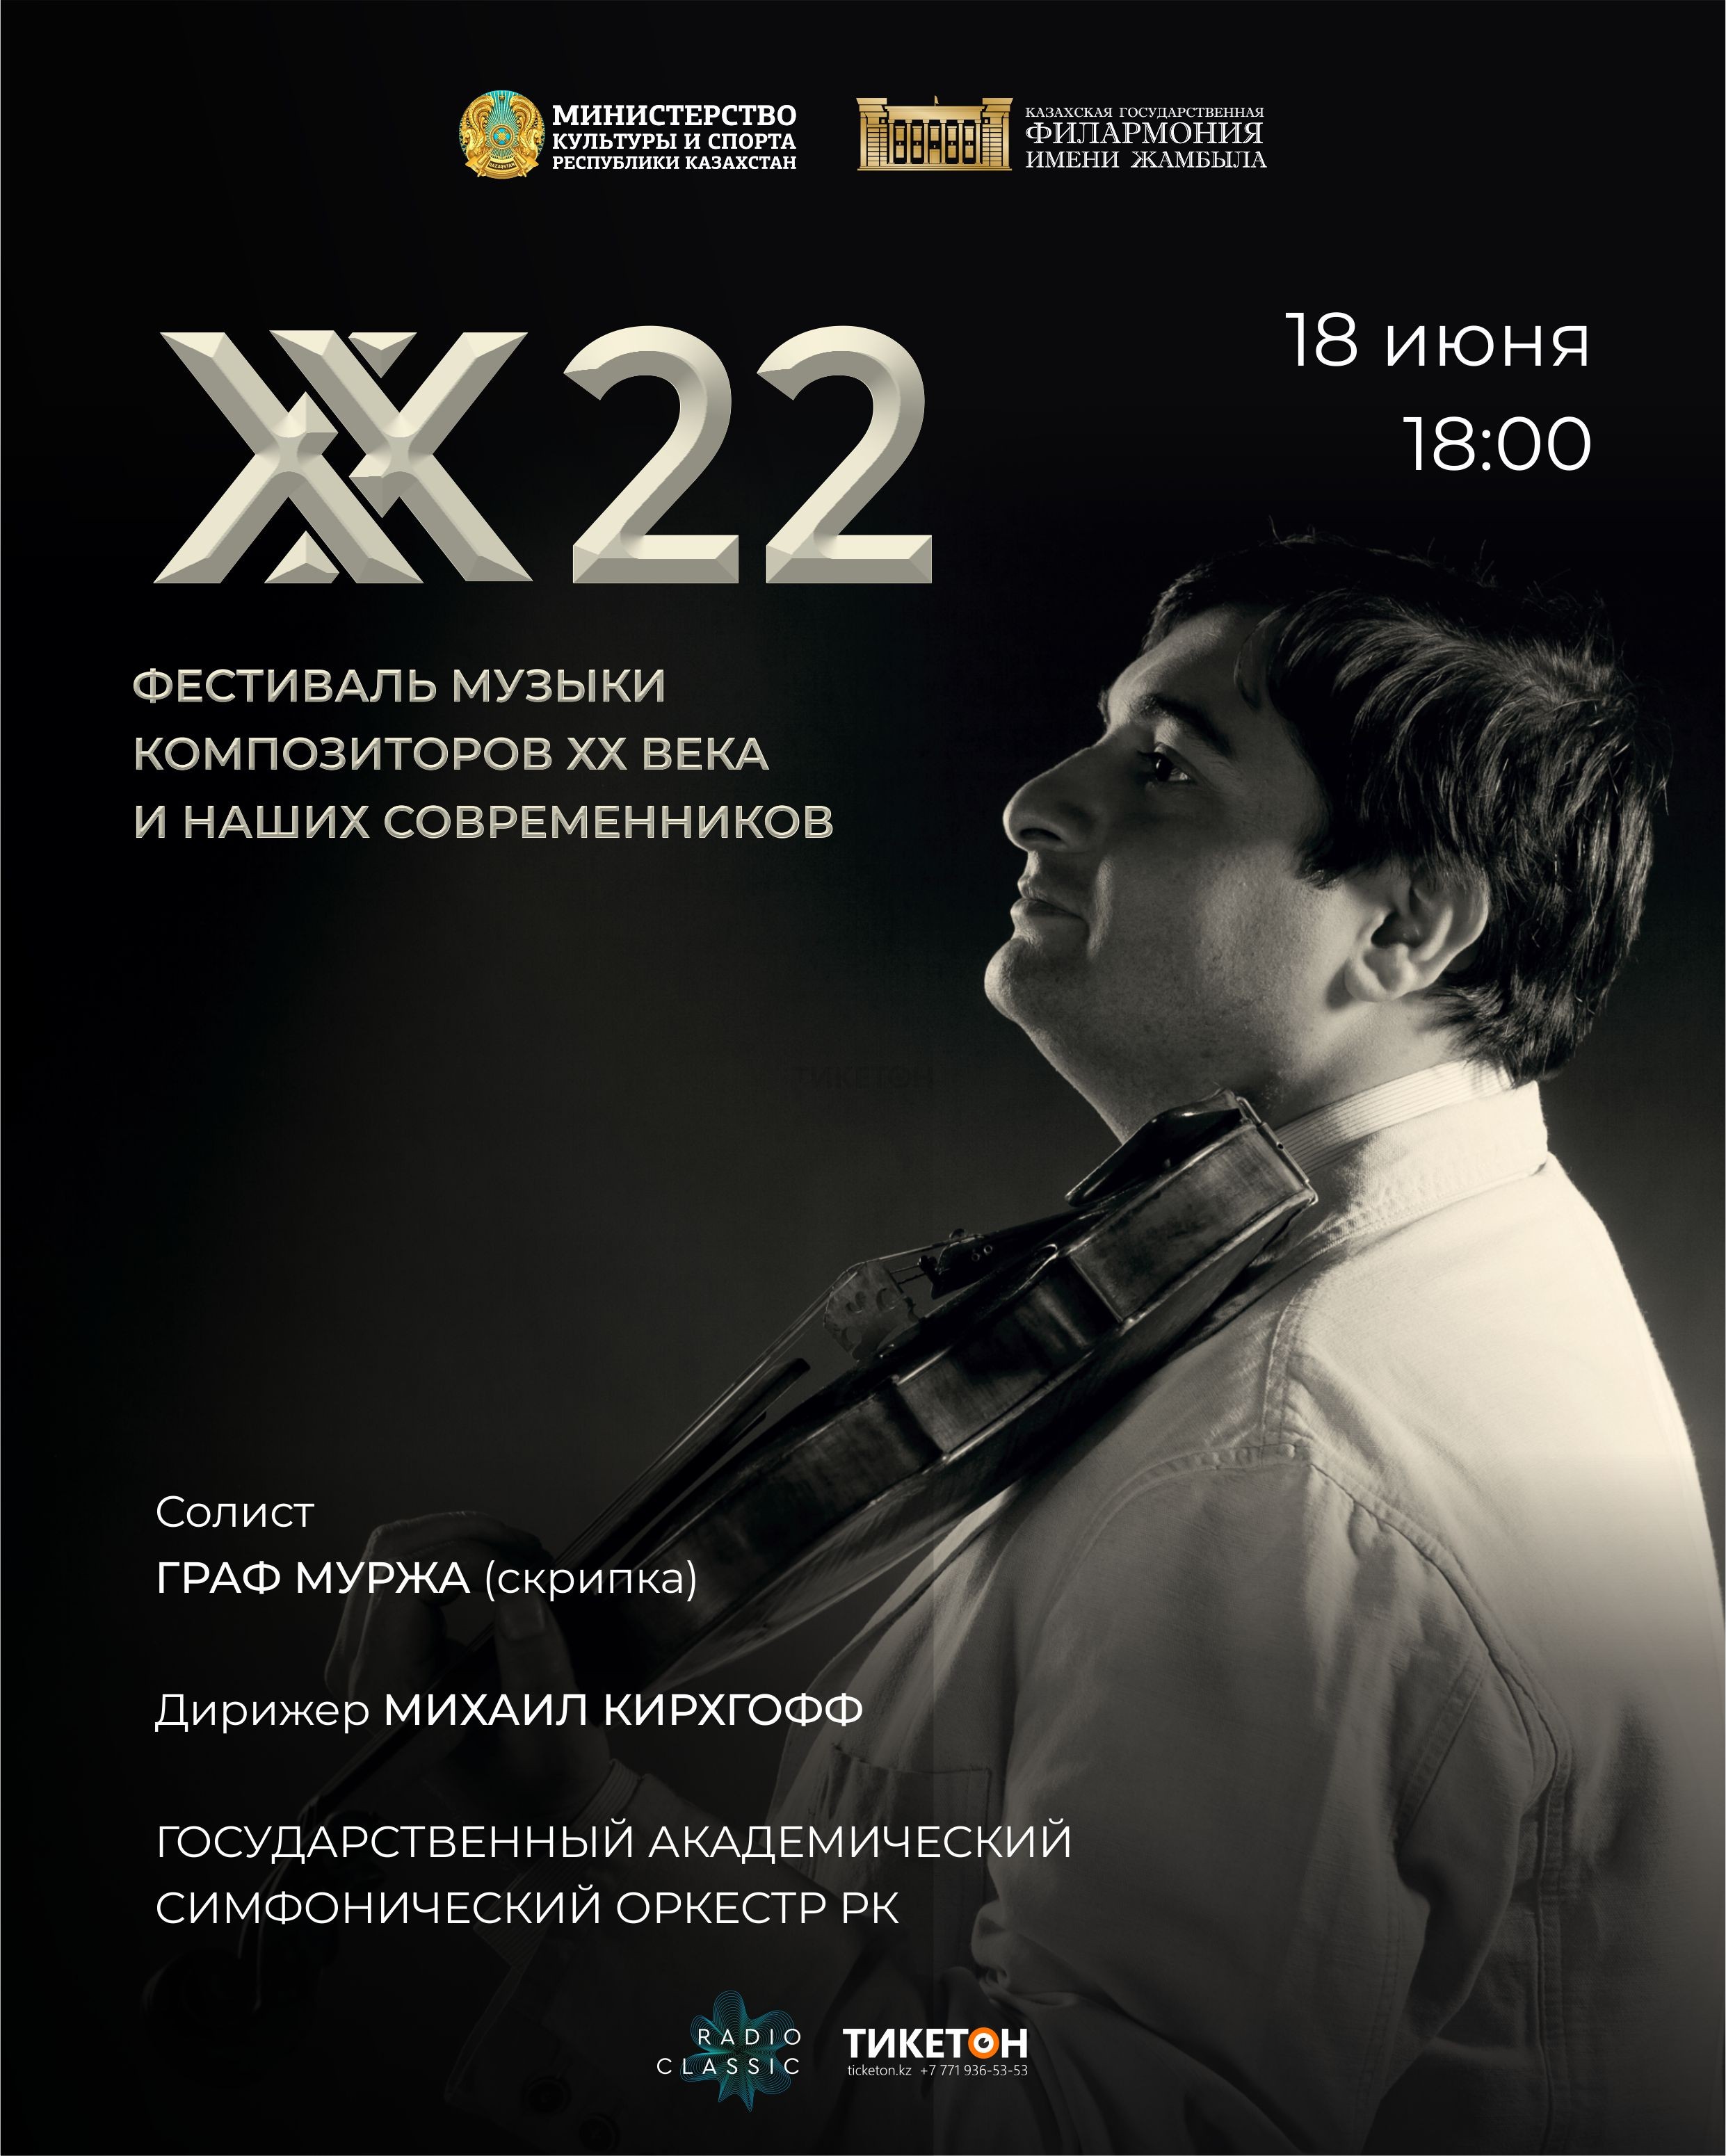 «ХХ22» фестиваль музыки композиторов ХХ века и наших современников 18 июня